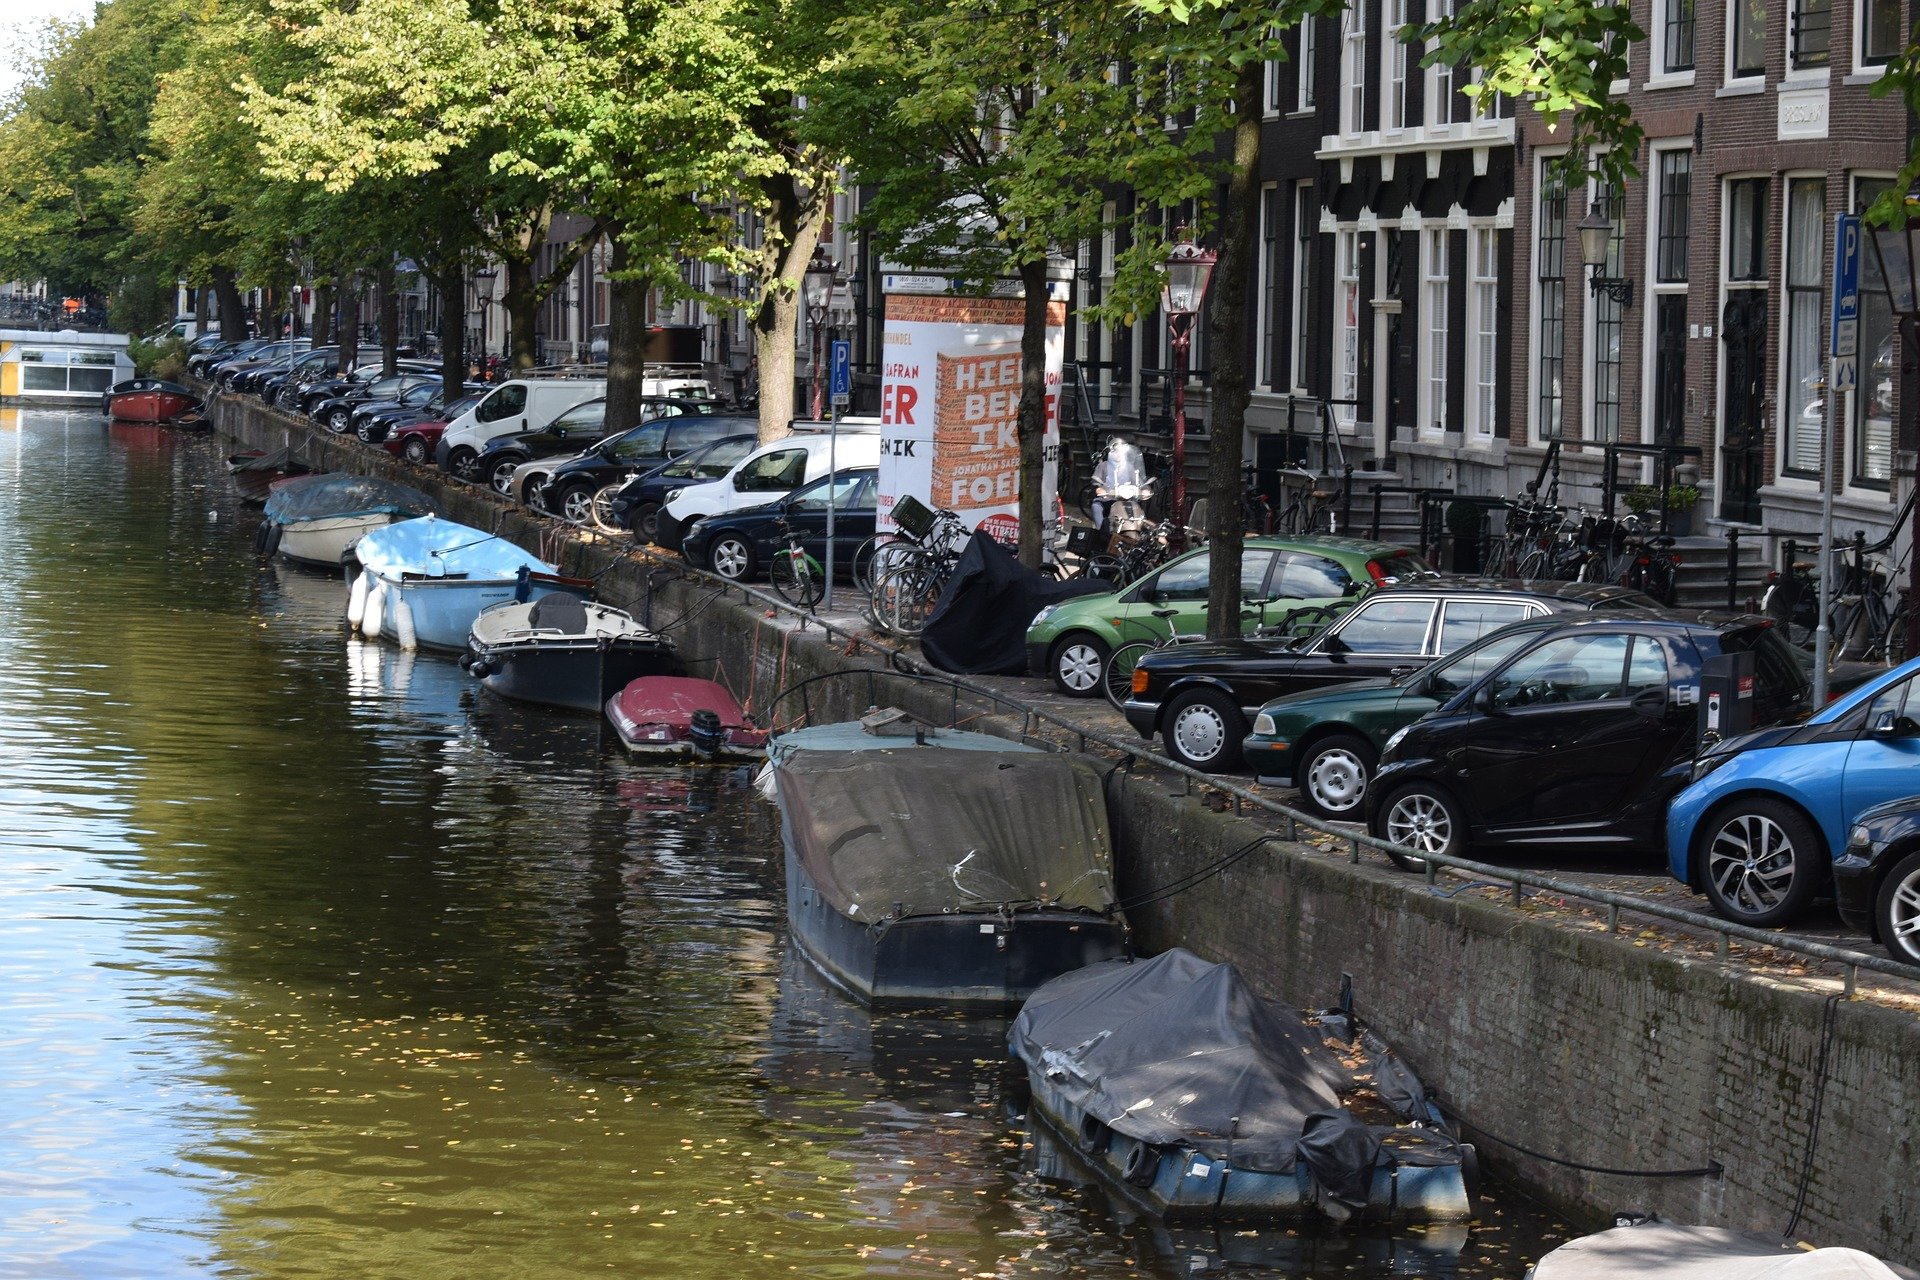 Amsterdam se chystá zakázat vjezd benzínovým i naftovým automobilům a motorkám